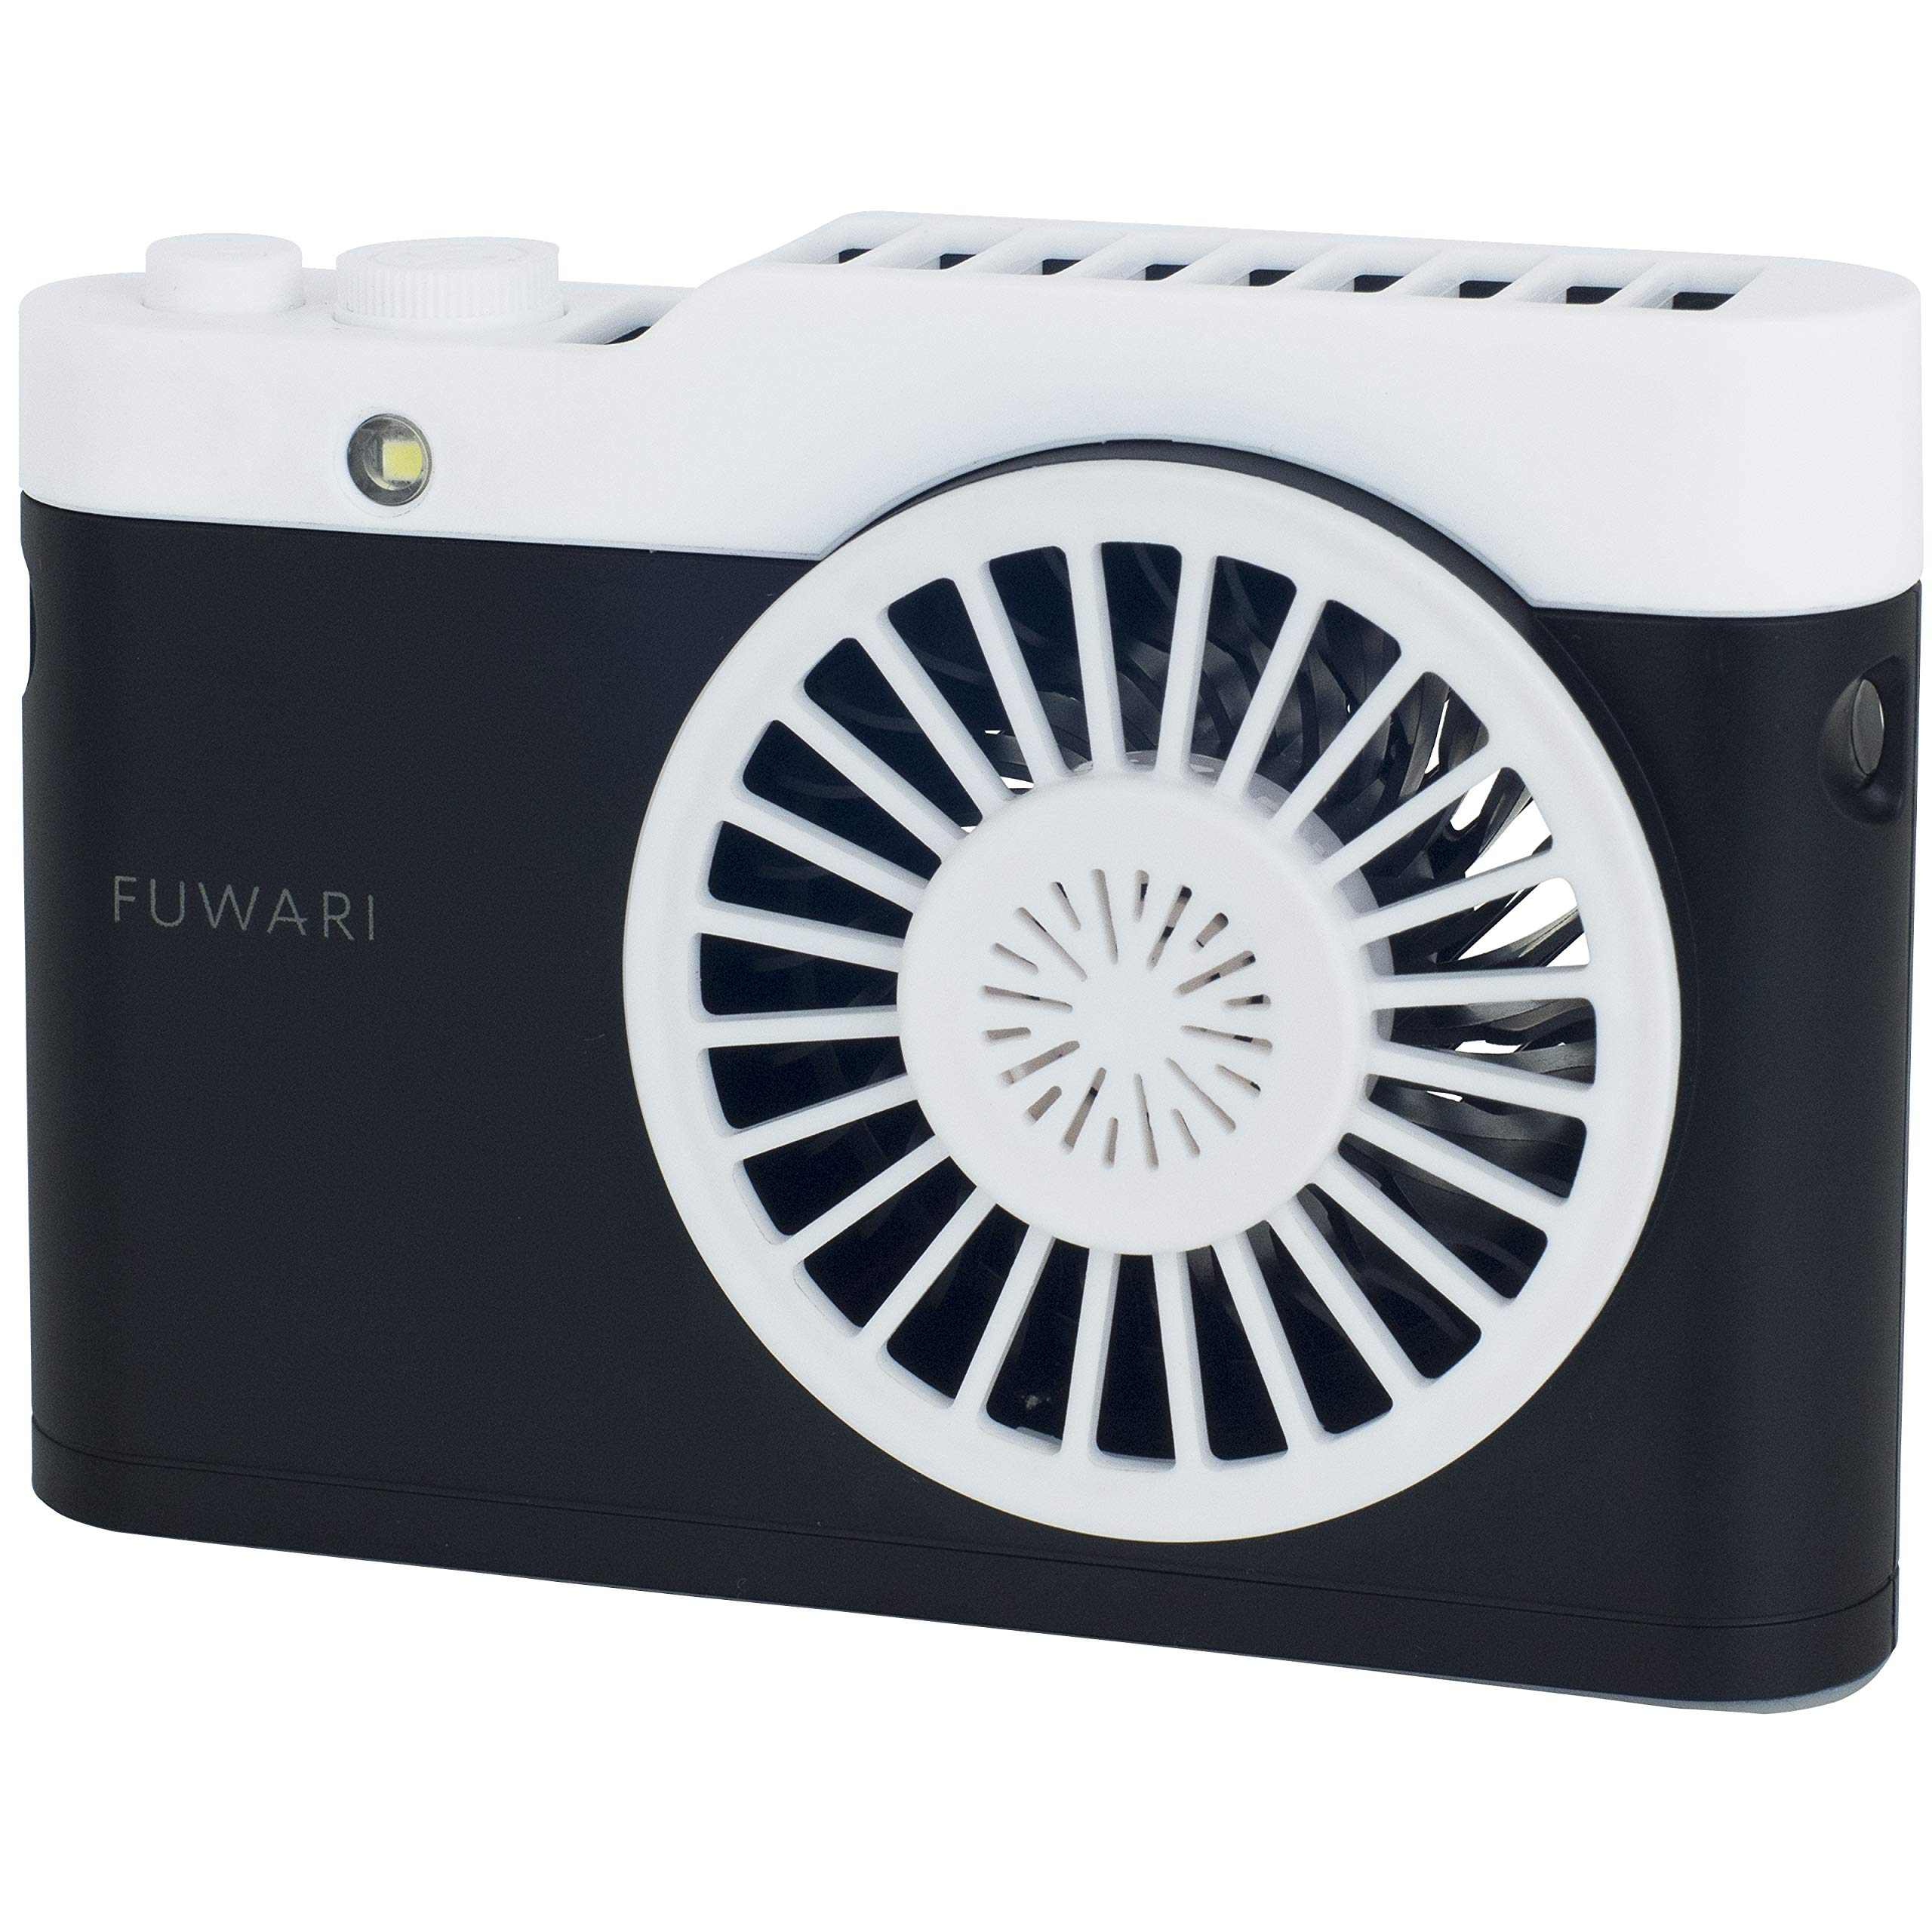 [山善] ハンディファン 携帯扇風機 首掛けタイプ カメラ型 熱中症対策 ハンズフリー FUWARI ミニ USB扇風機 アロマオイル対応 ストラップ